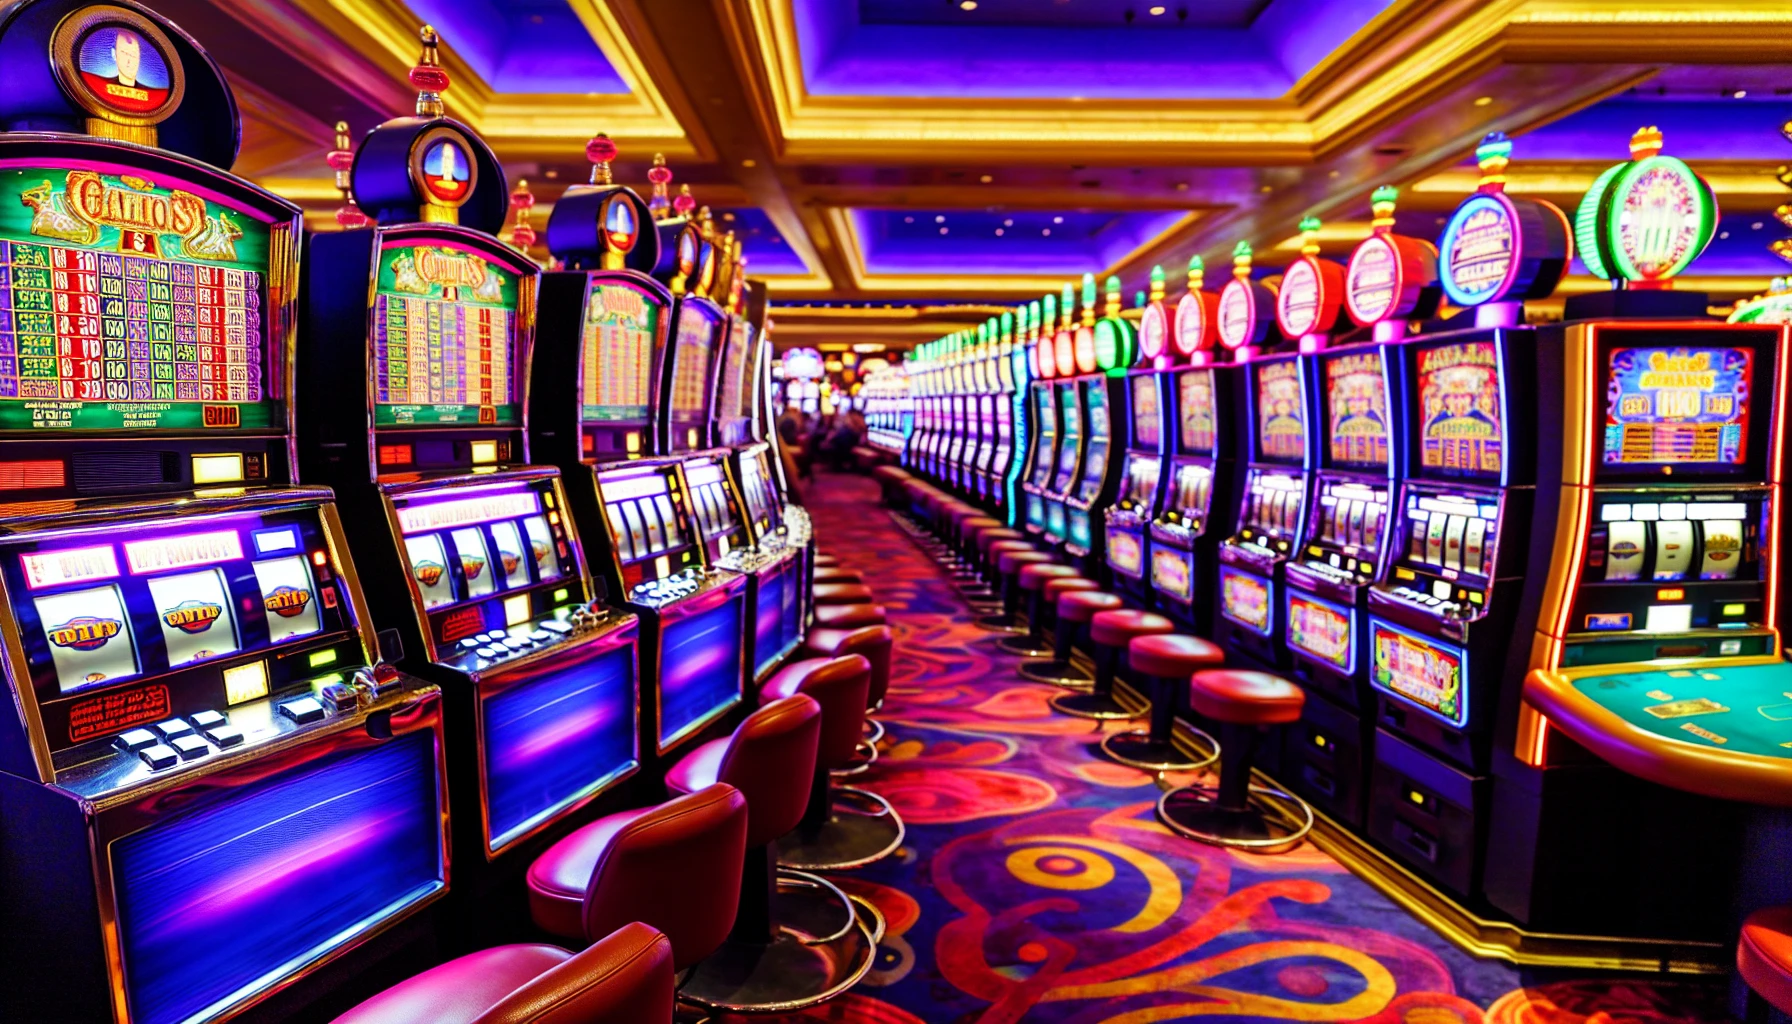 Classic slot machines in a casino